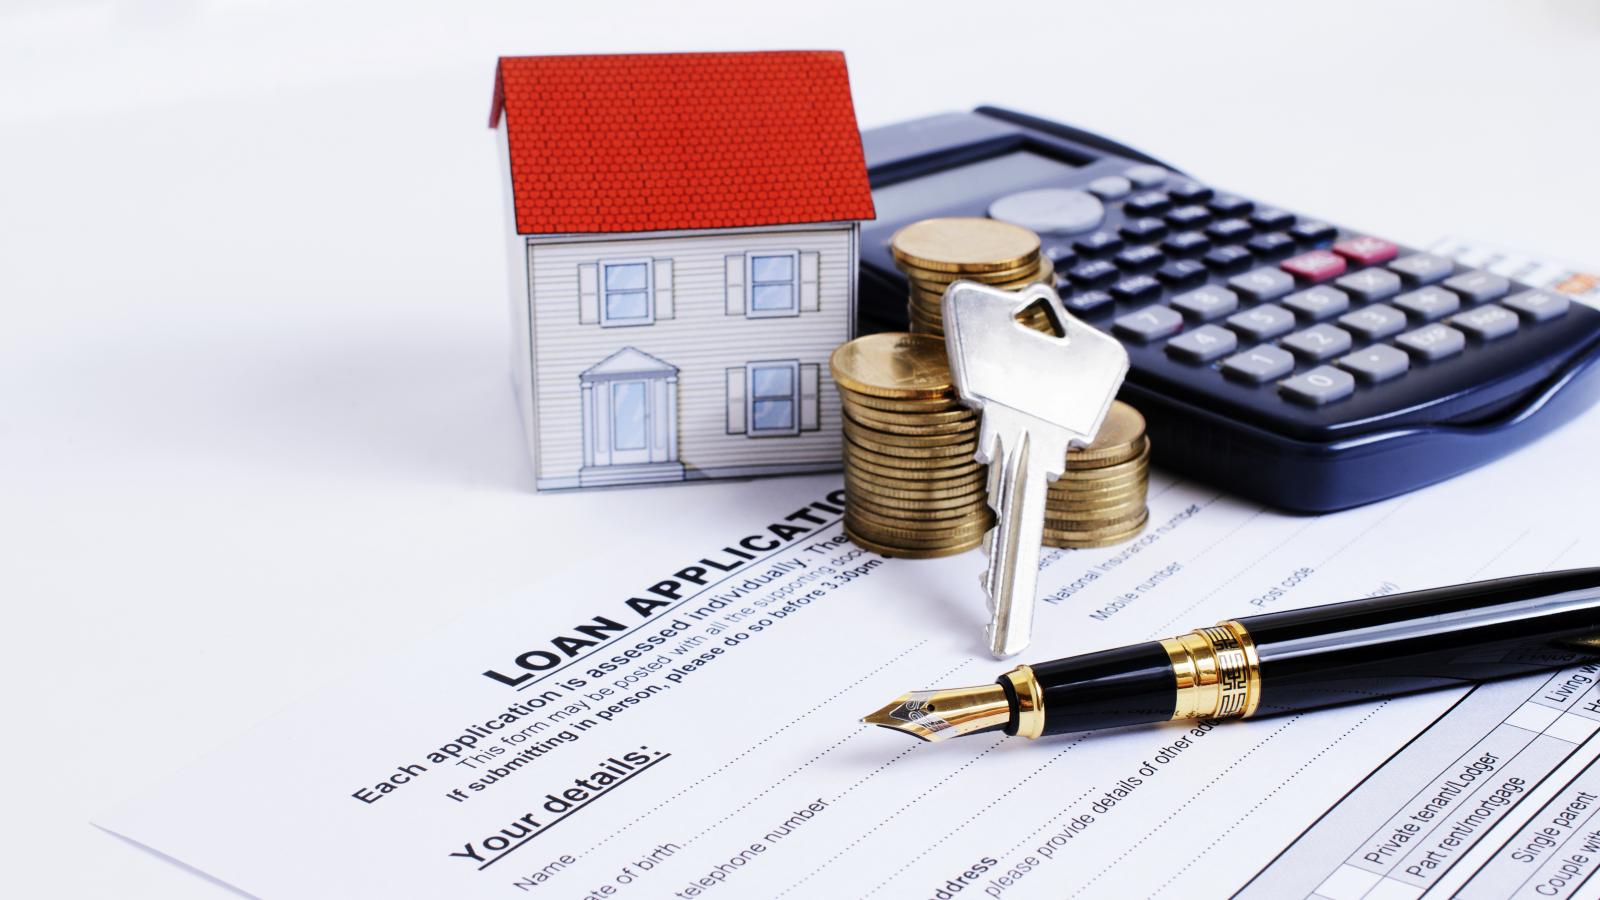 Vay 1 tỷ đồng mua nhà thì mỗi tháng phải trả bao nhiêu tiền gốc và lãi?